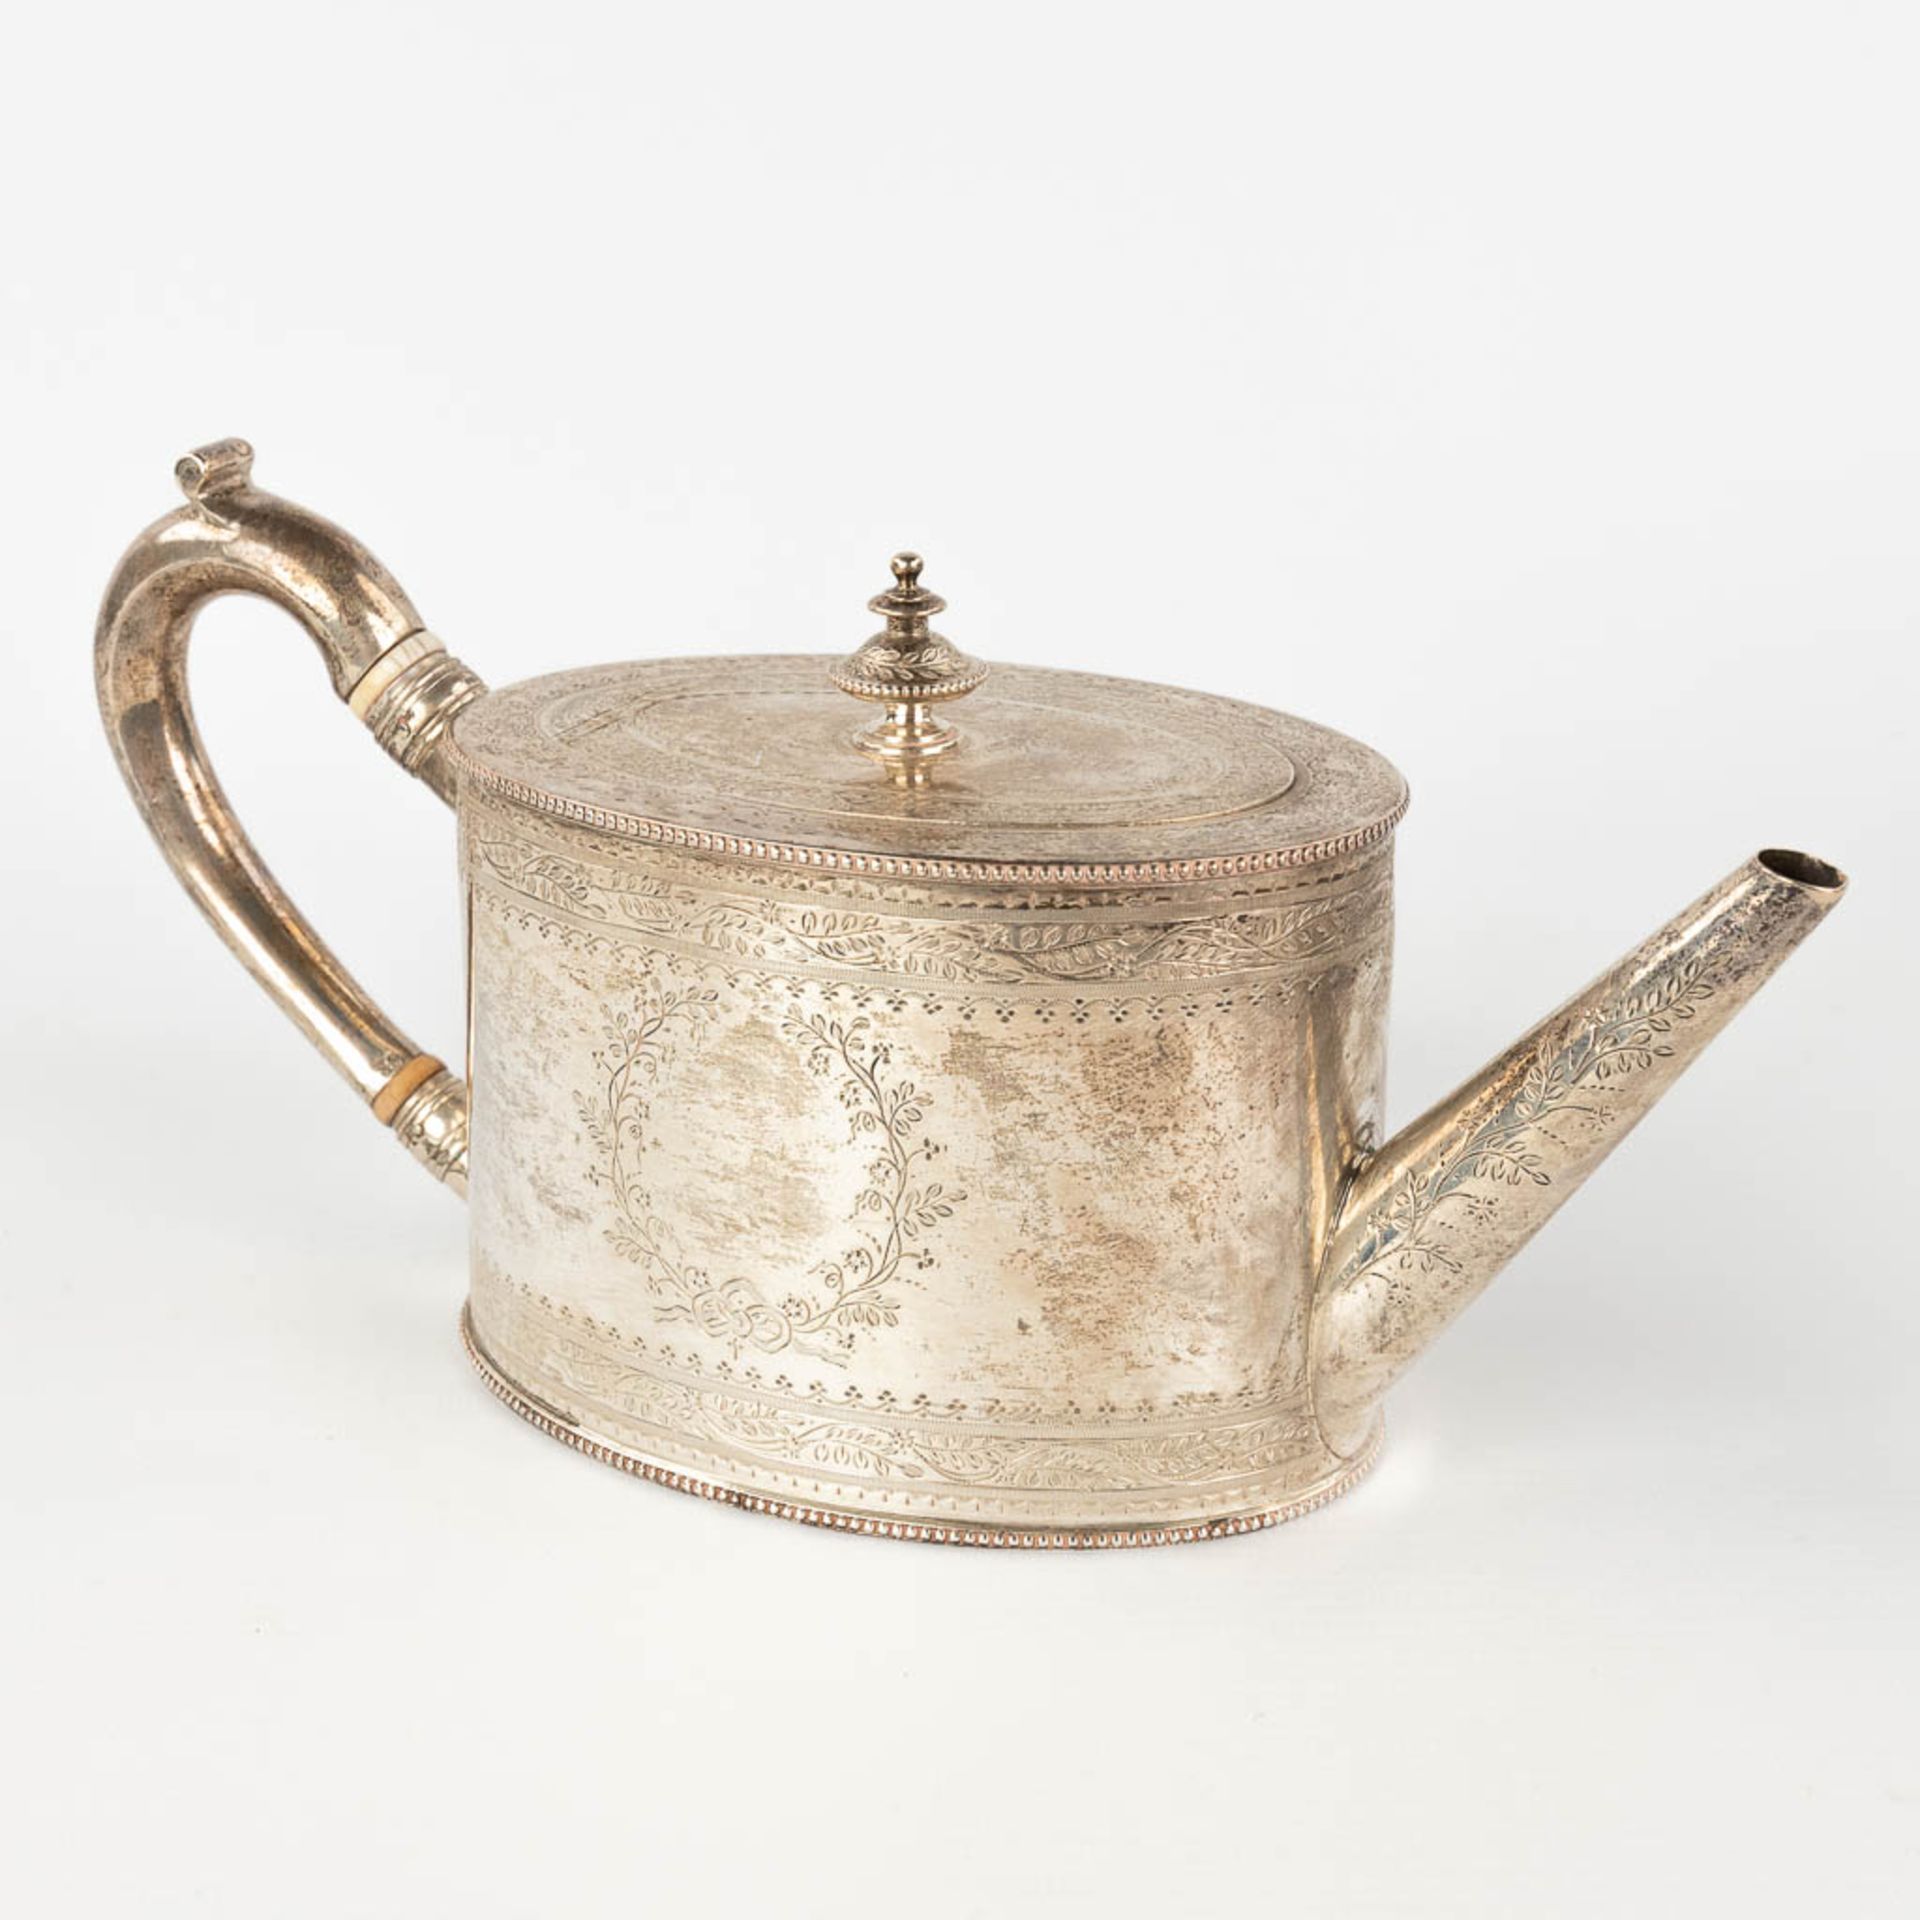 An antique tea pot, silver, London, 19th century. 520g. (L: 10 x W: 26 x H: 13 cm) - Image 3 of 14